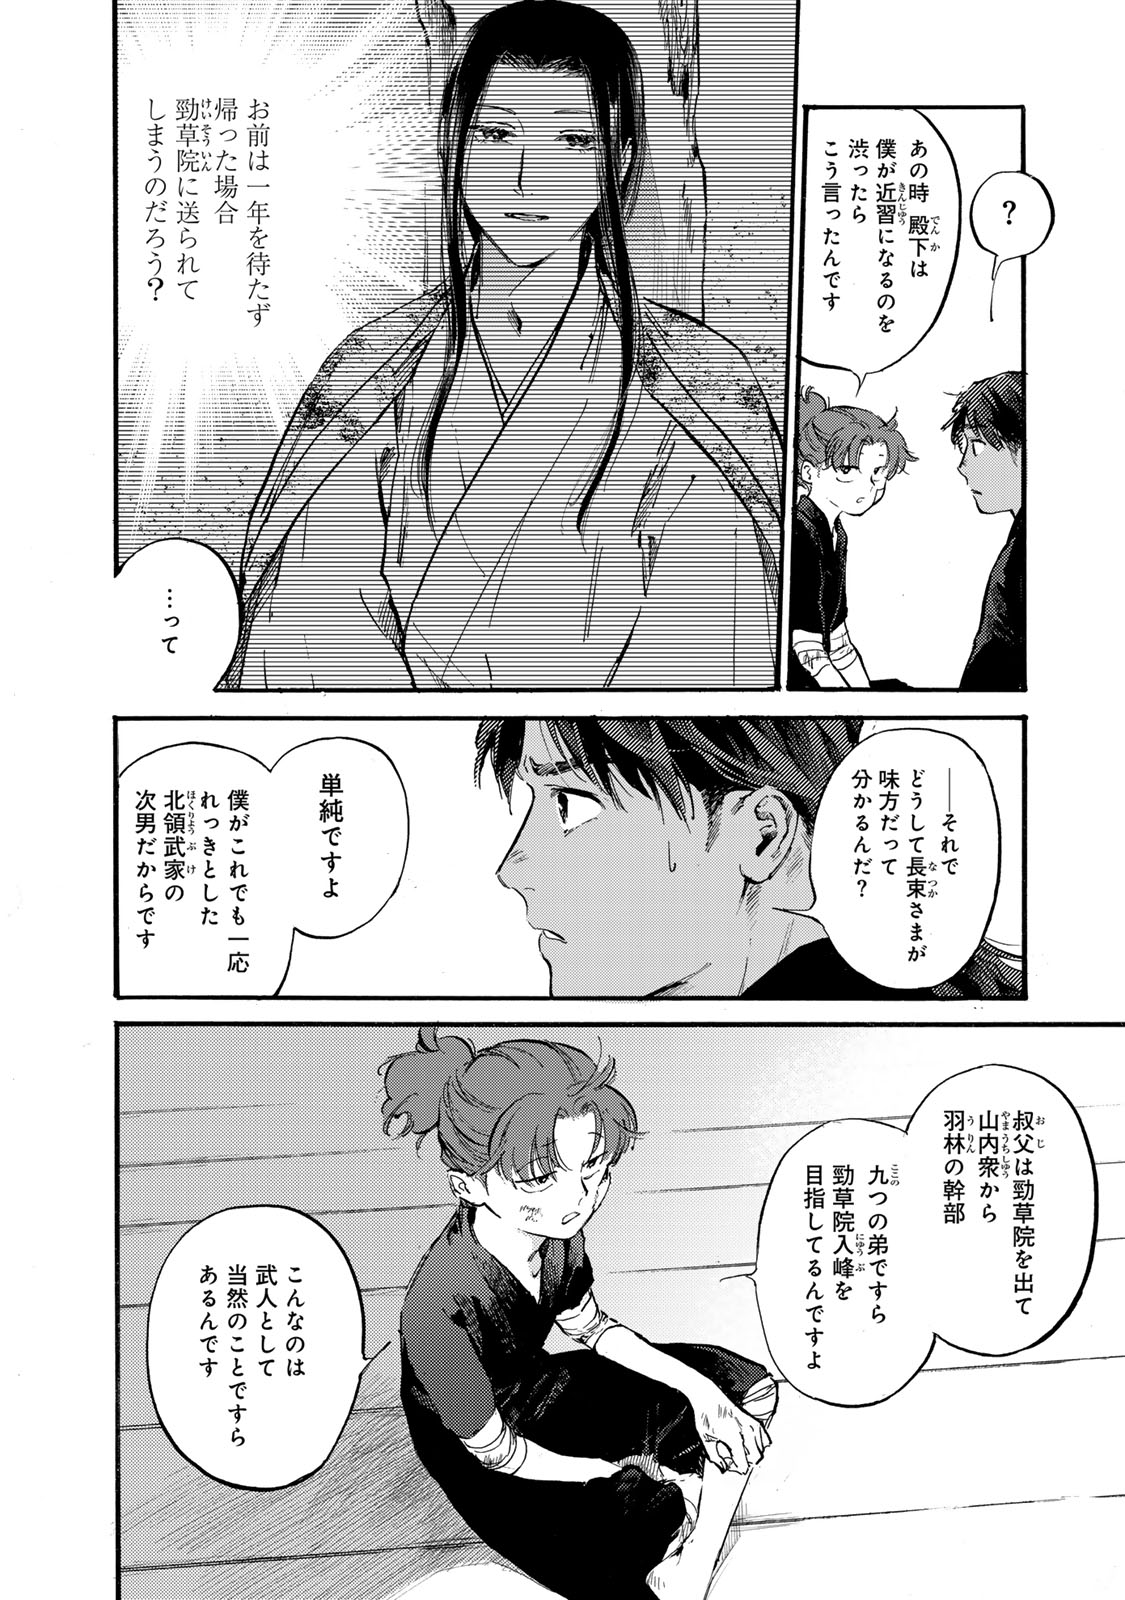 Karasu wa Aruji wo Erabanai - Chapter 43 - Page 14